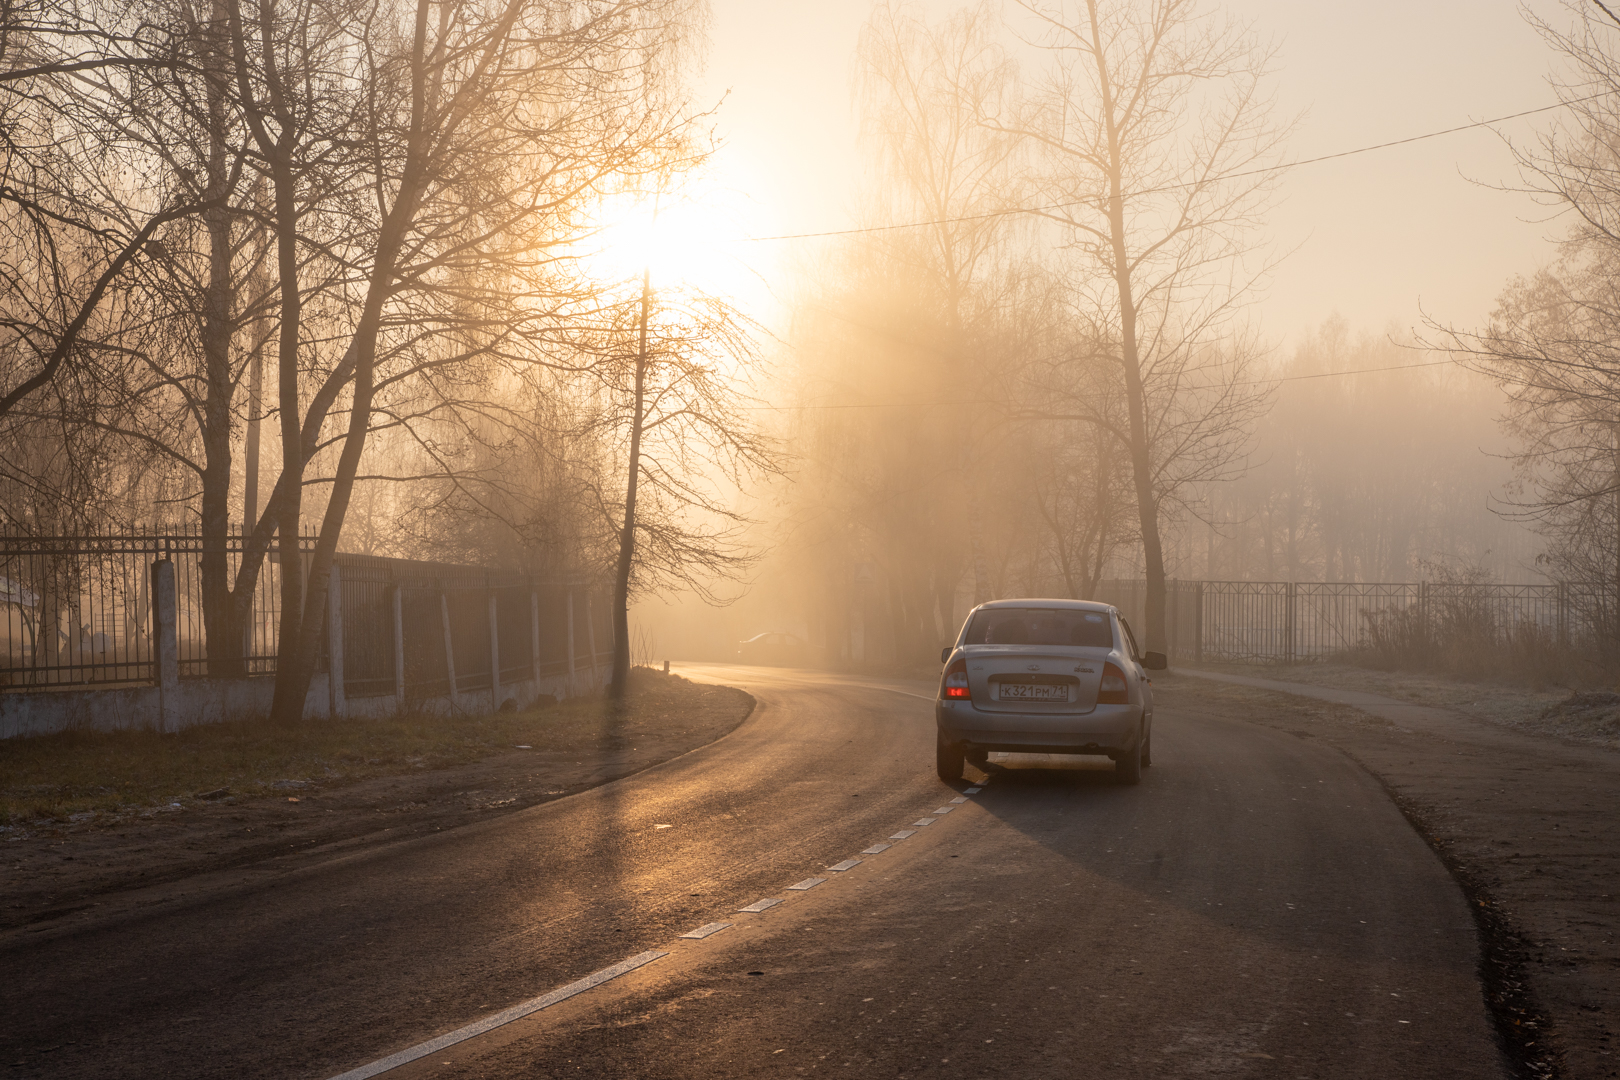 Метеопредупреждение: в Тульской области ожидается туман с видимостью 200-700 метров